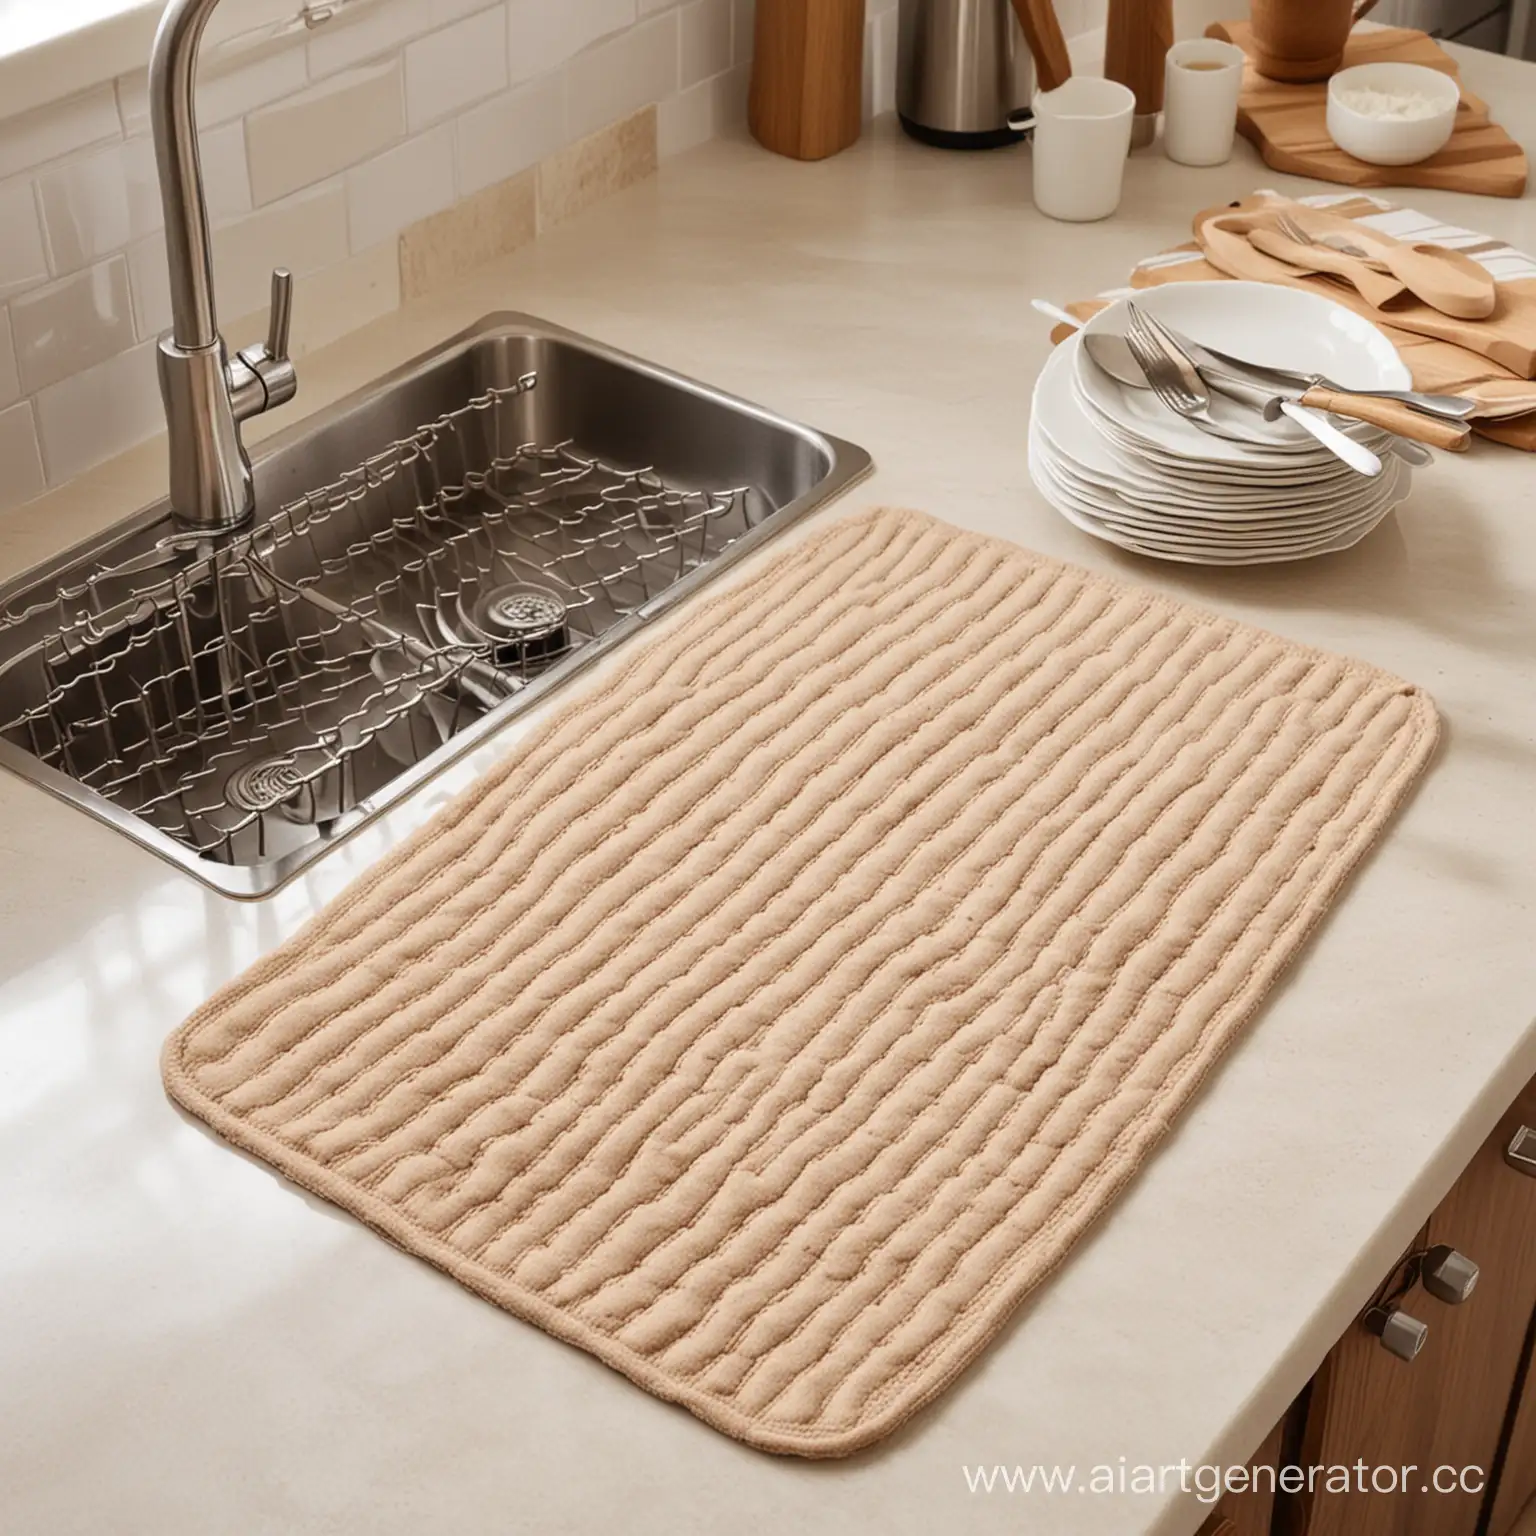 Создай фото коврика для сушки посуды. Коврик прямоугольный, лежит на кухне, бежевого цвета